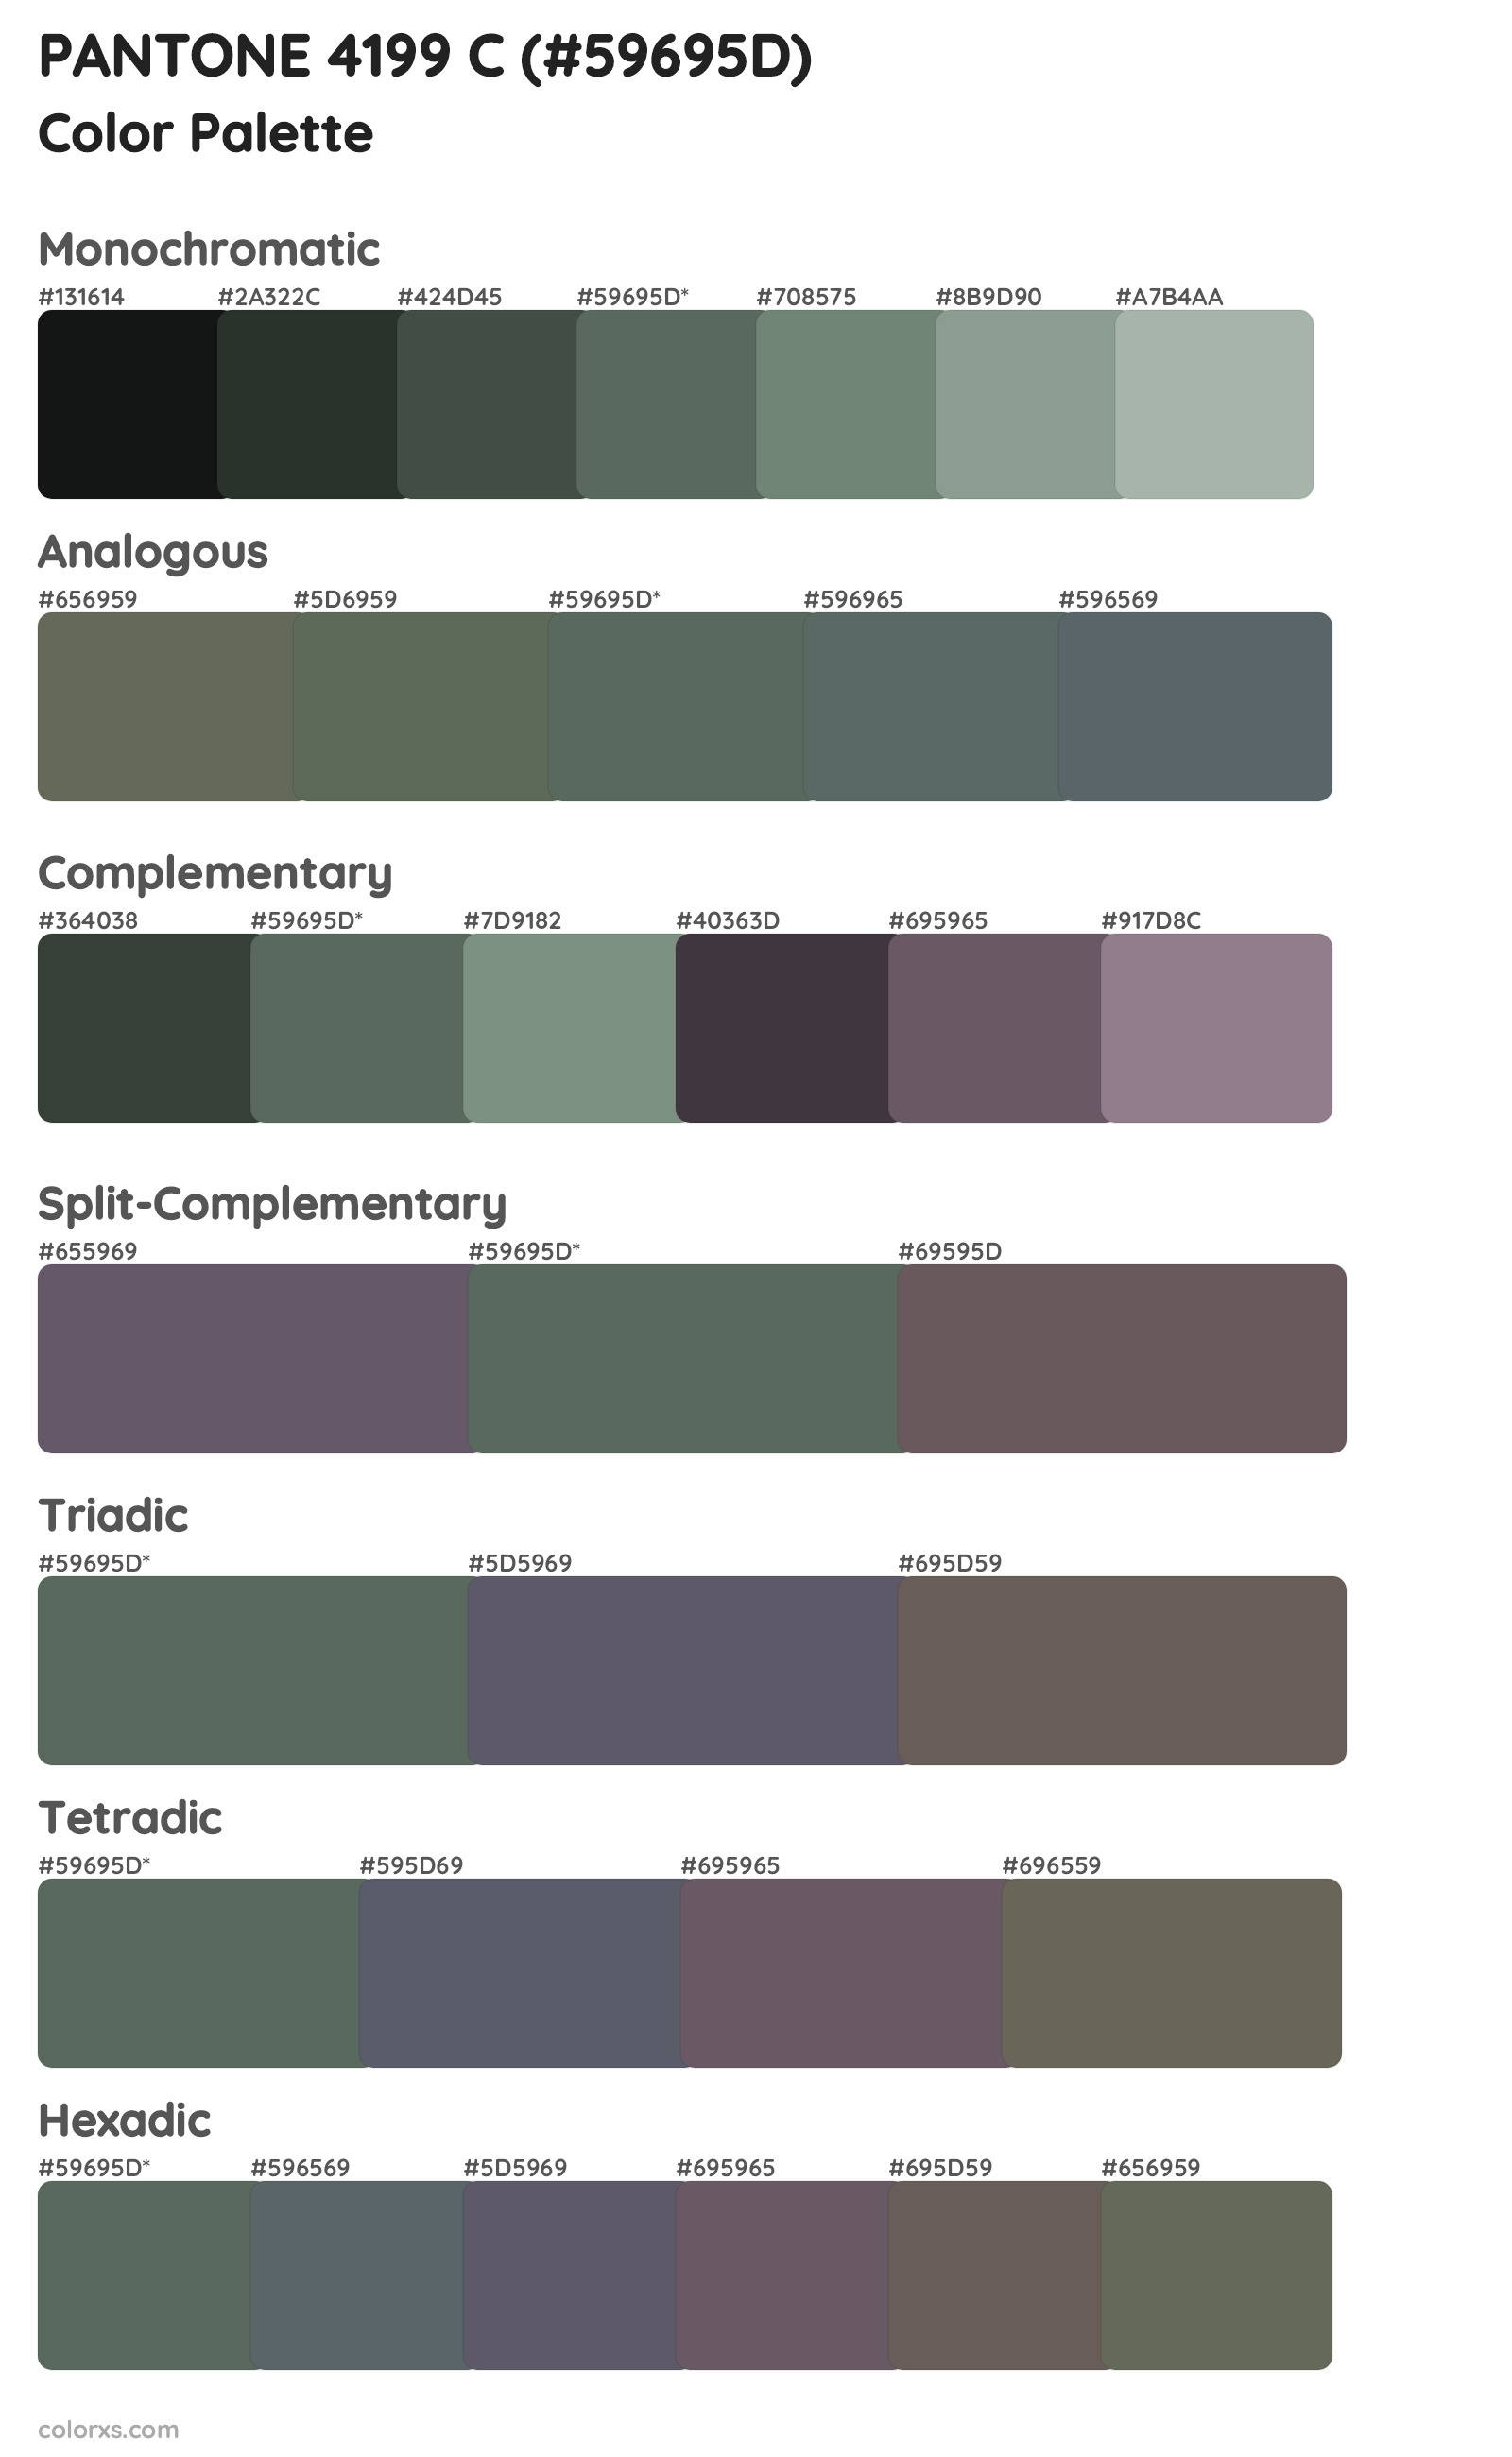 PANTONE 4199 C Color Scheme Palettes